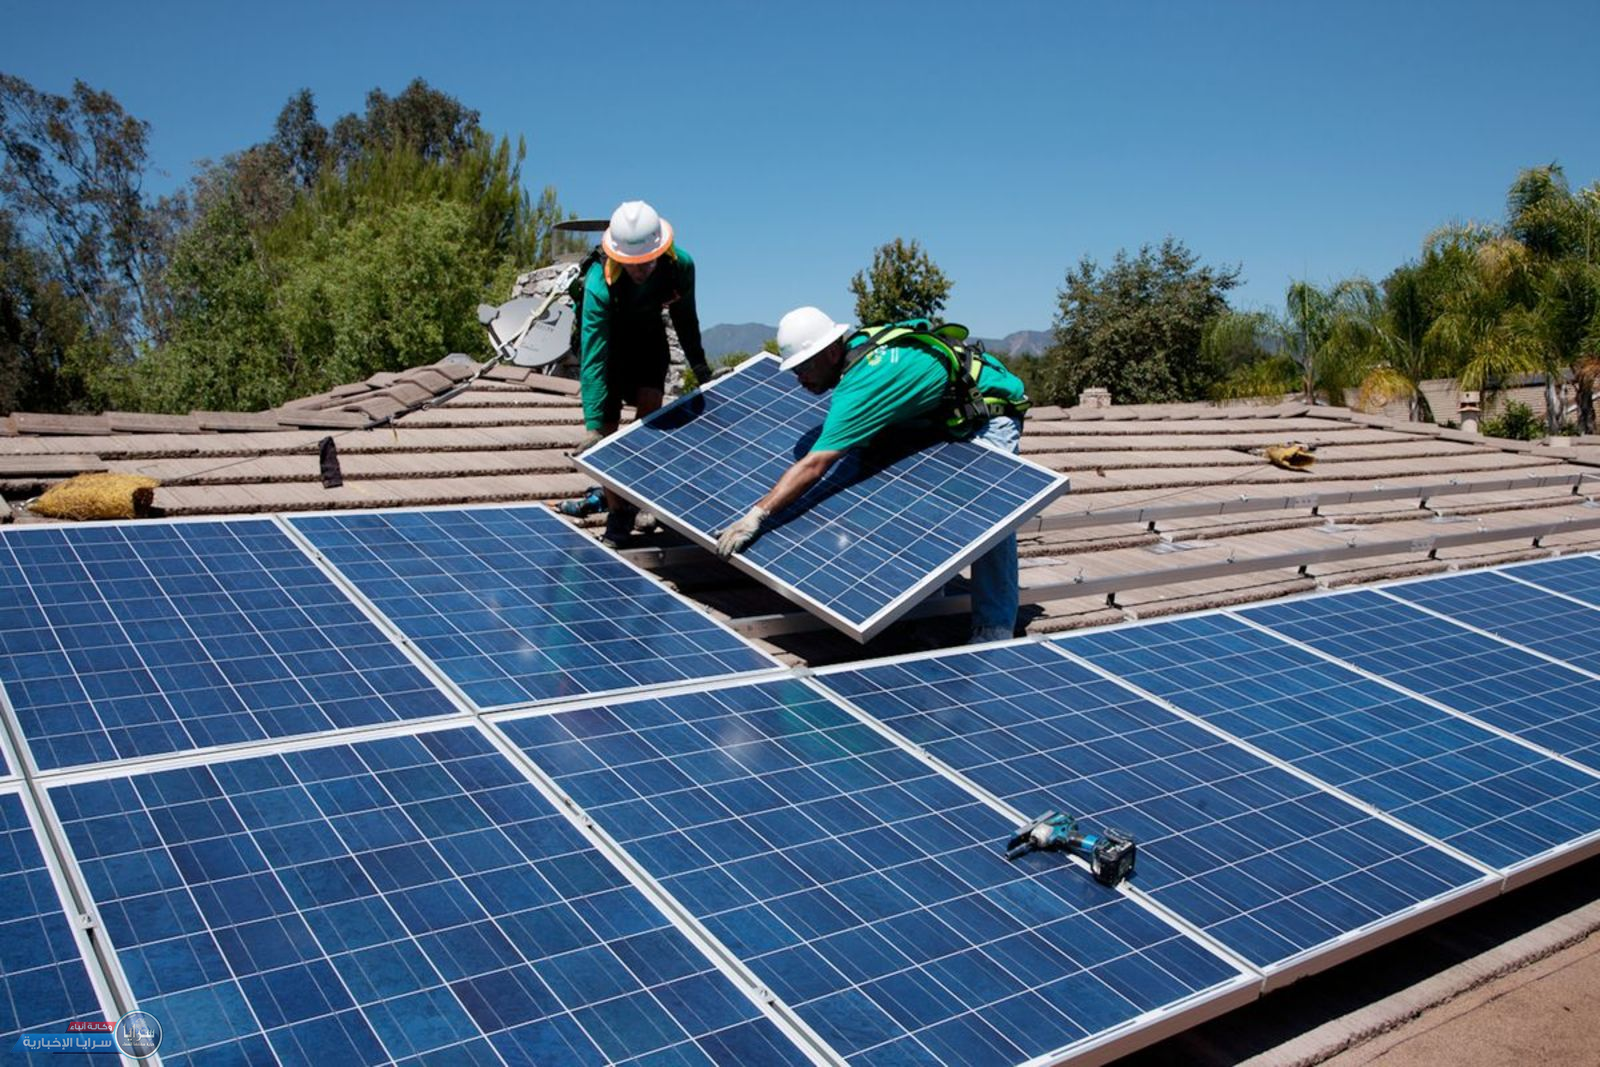 مواطنون يطالبون عبر "سرايا" هيئة تنظيم الطاقة والمعادن بأخذ "خلايا الطاقة الشمسية" من فوق أسطح منازلهم 